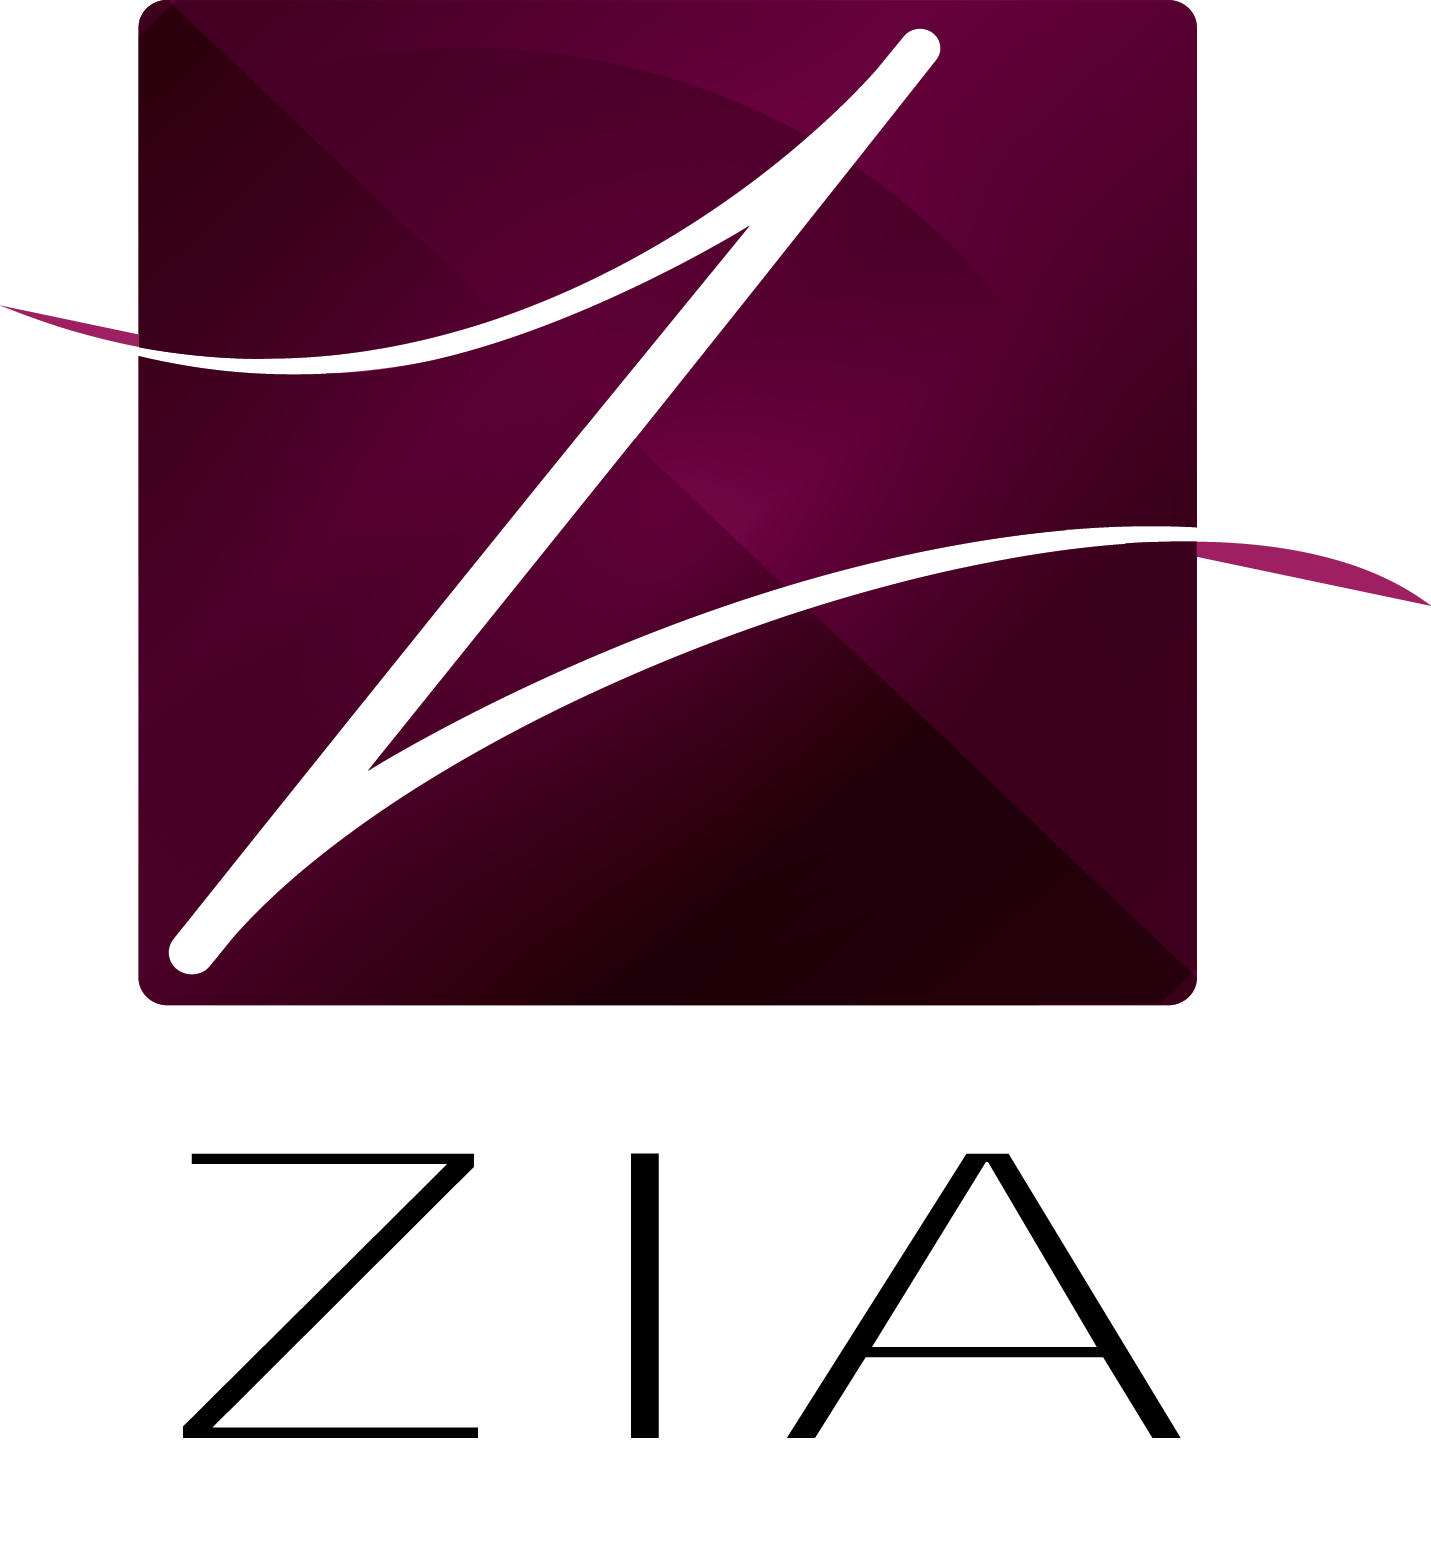 Zia Logo - Zia logo